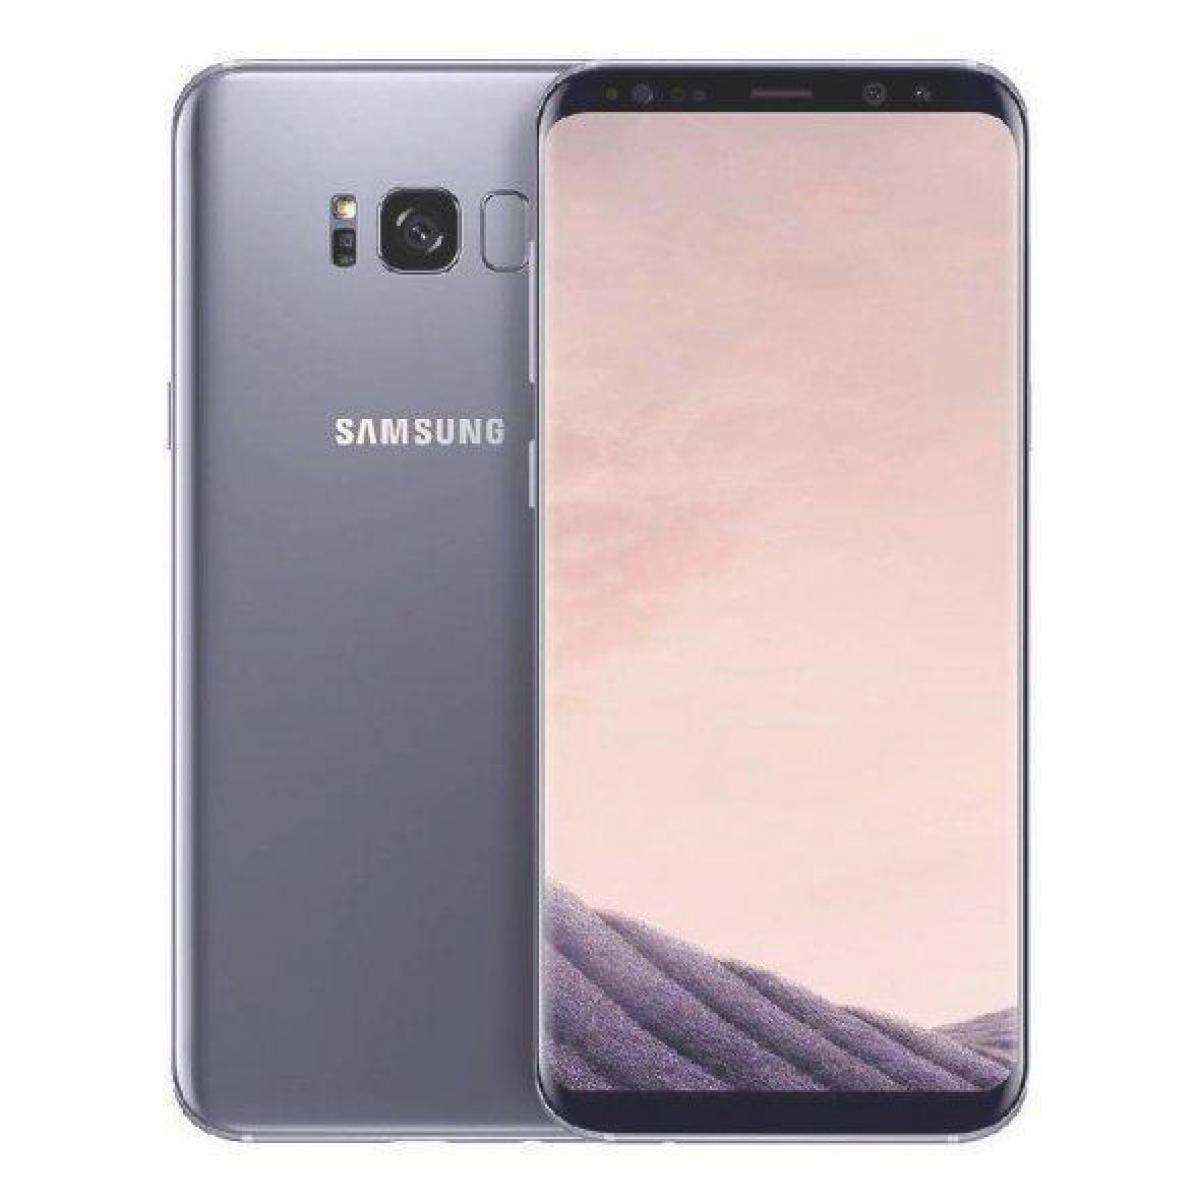 Samsung - Samsung Galaxy S8 64 Go Violet - débloqué tout opérateur - Smartphone Android